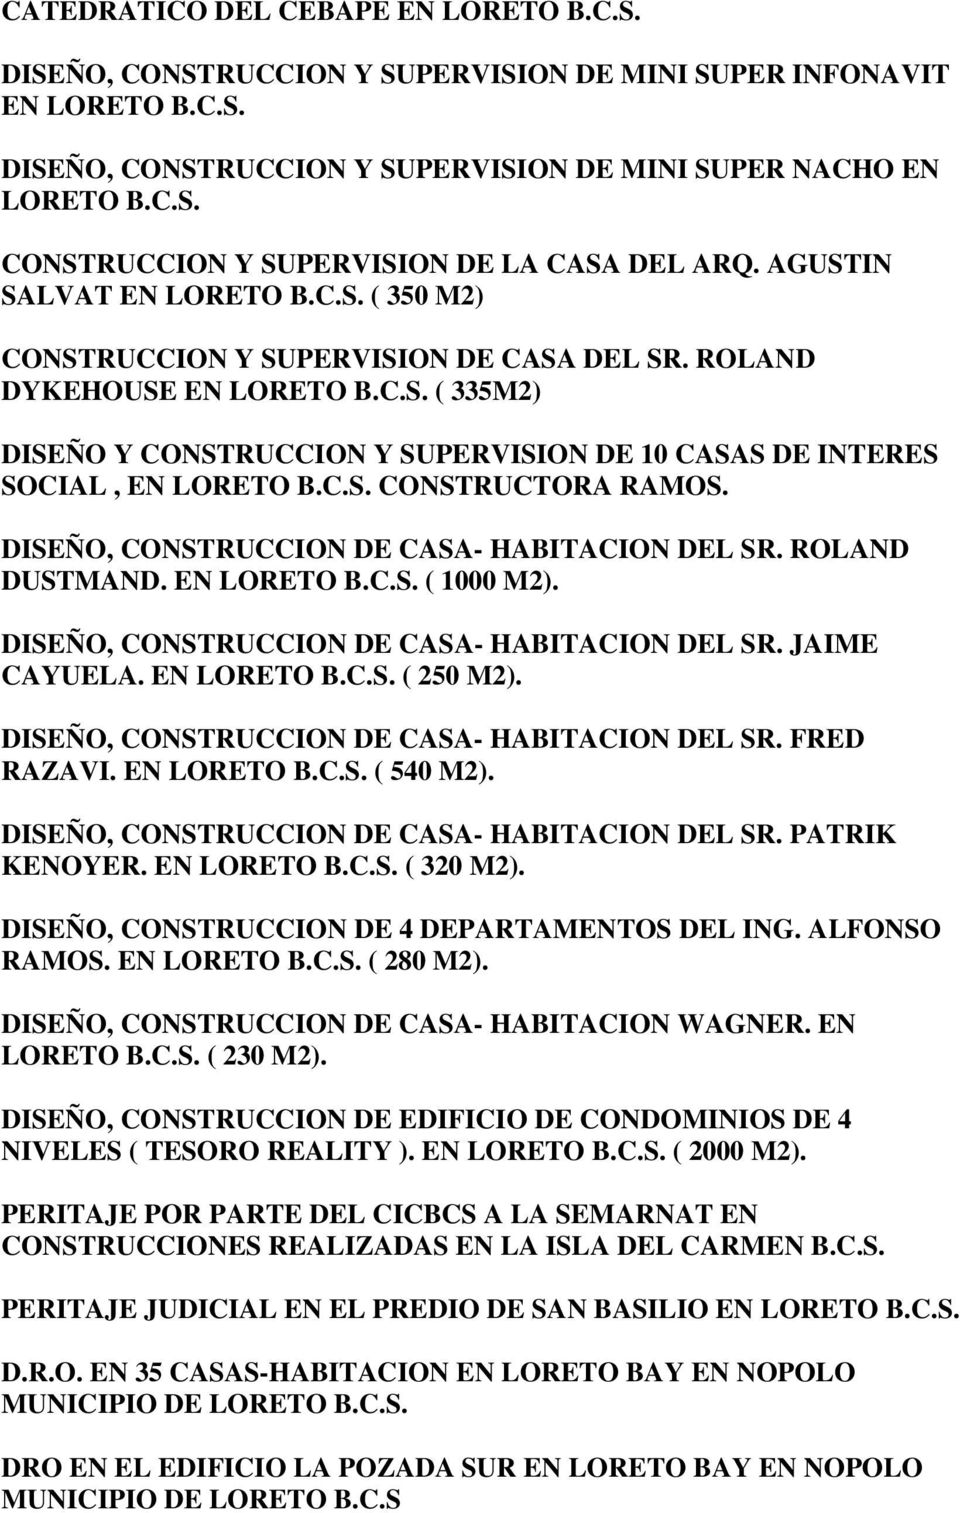 C.S. CONSTRUCTORA RAMOS. DISEÑO, CONSTRUCCION DE CASA- HABITACION DEL SR. ROLAND DUSTMAND. EN LORETO B.C.S. ( 1000 M2). DISEÑO, CONSTRUCCION DE CASA- HABITACION DEL SR. JAIME CAYUELA. EN LORETO B.C.S. ( 250 M2).